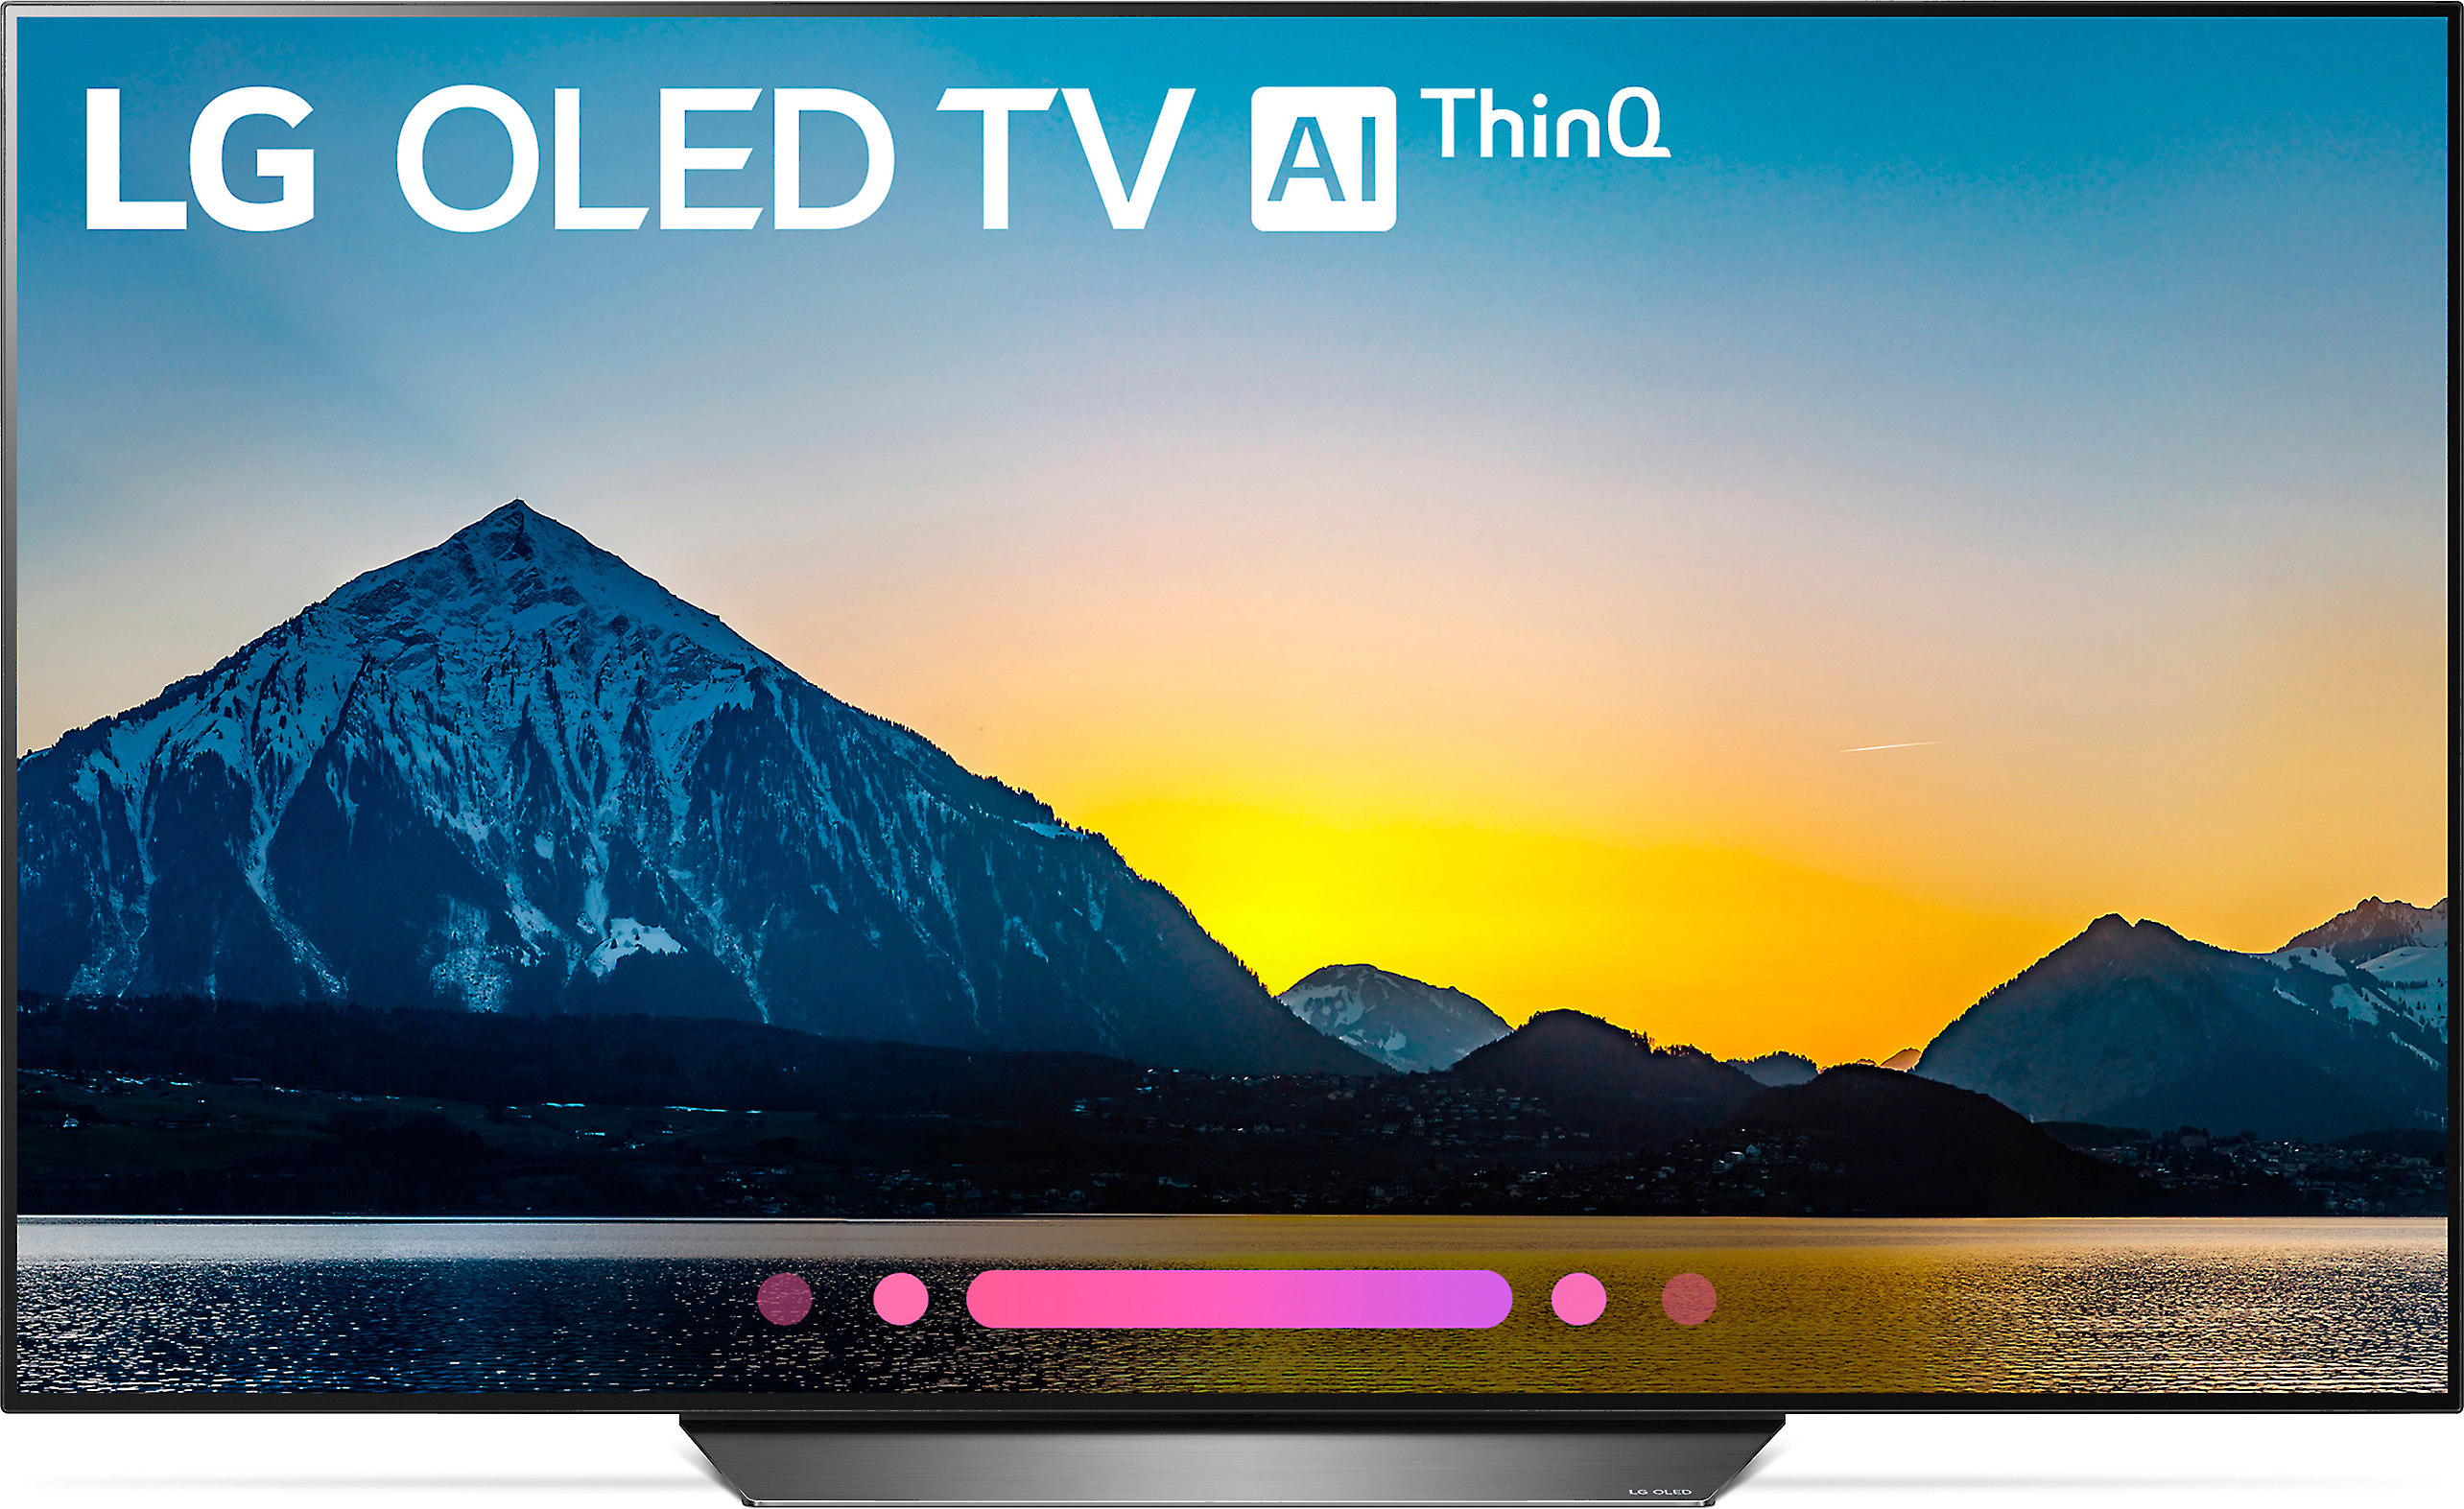 Lg Oled65b8pua 65 Smart Oled 4k Ultra Hd Tv With Hdr 2018 Model